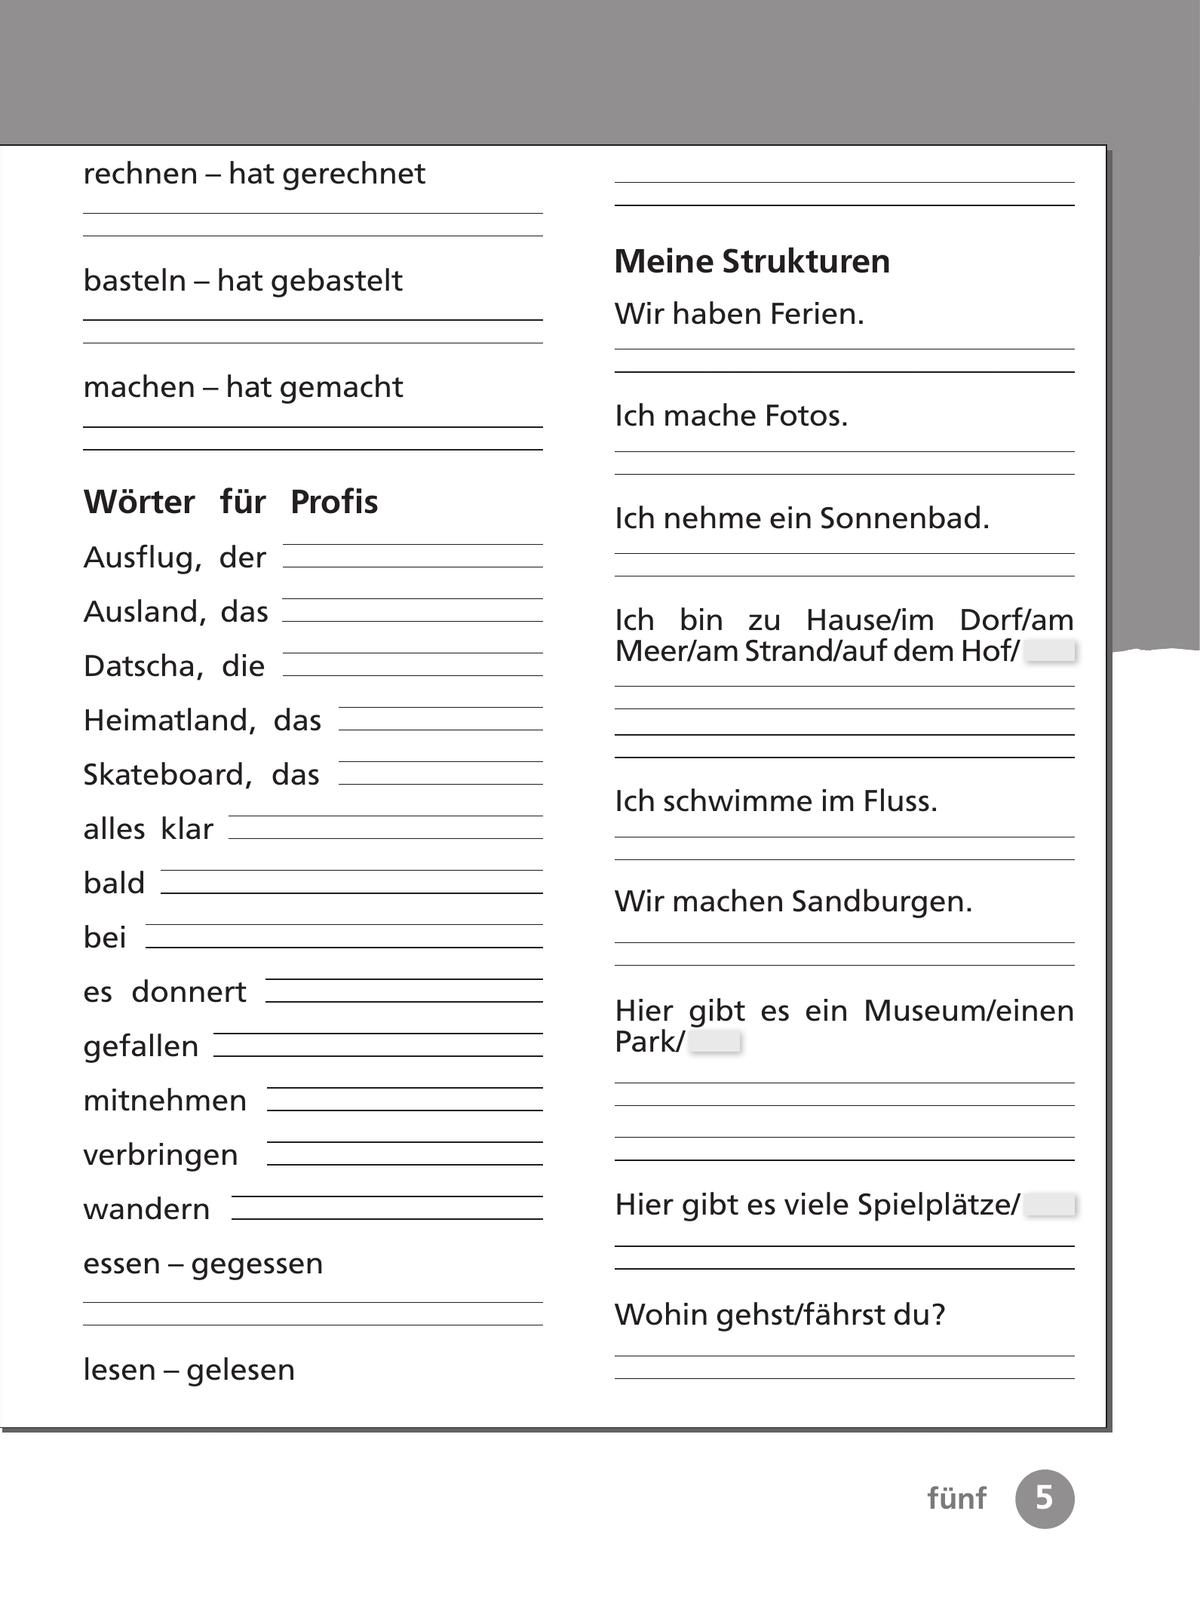 Немецкий язык. Рабочая тетрадь. 3 класс В 2-х ч. Ч. 1 11